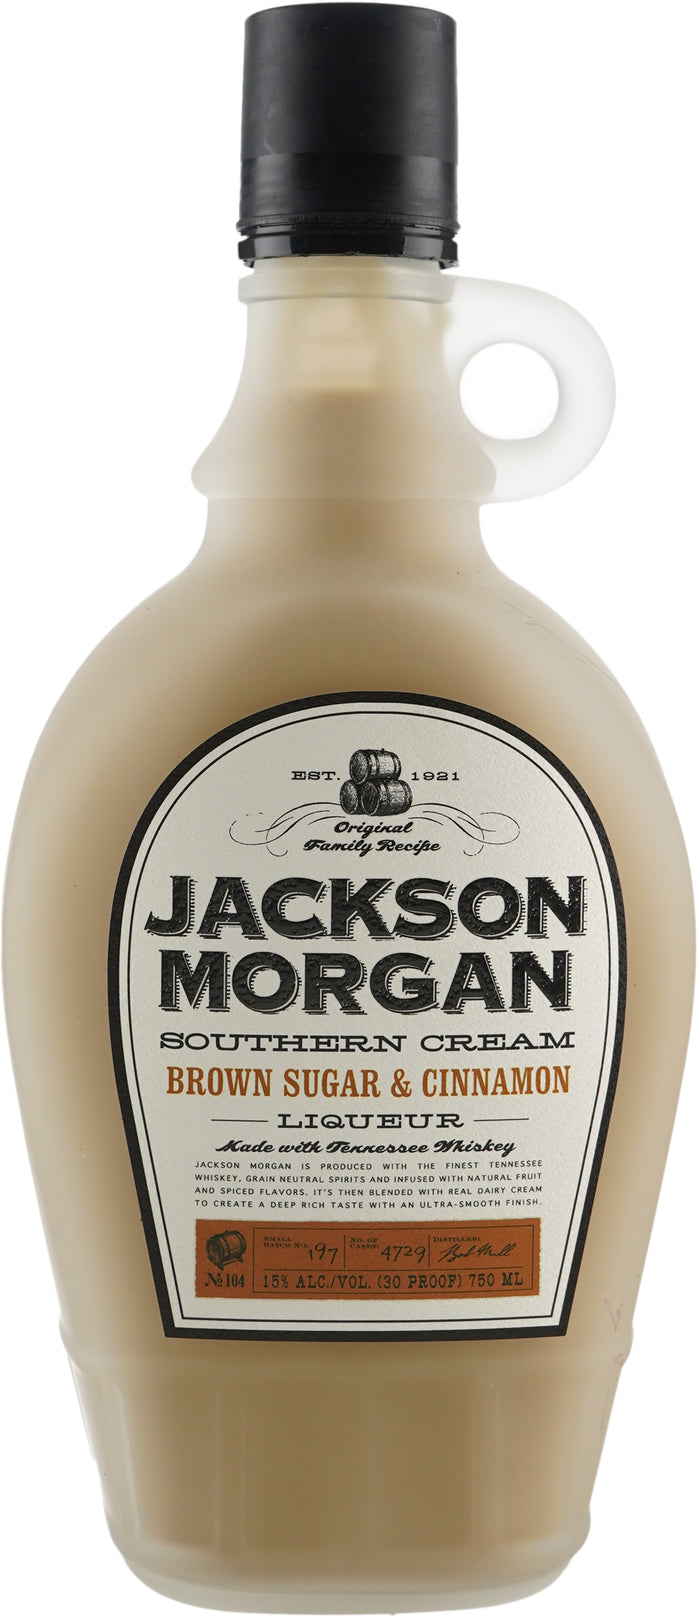 Jackson Morgan Southern Cream Brown Sugar & Cinnamon Liqueur